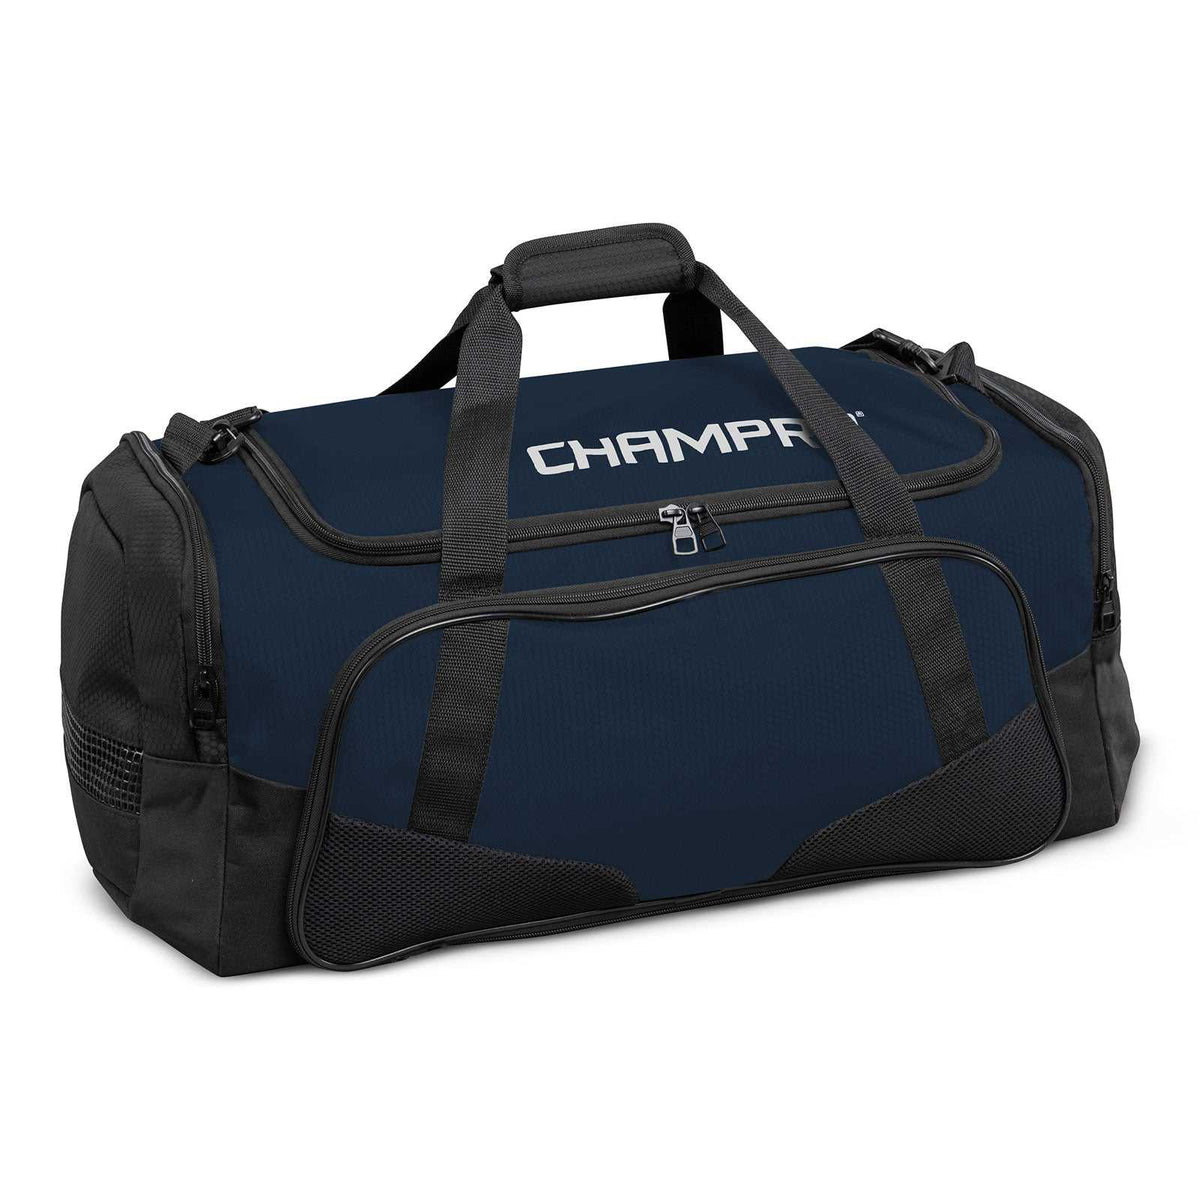 Champro E84 Team Duffel Bag - Navy - HIT a Double